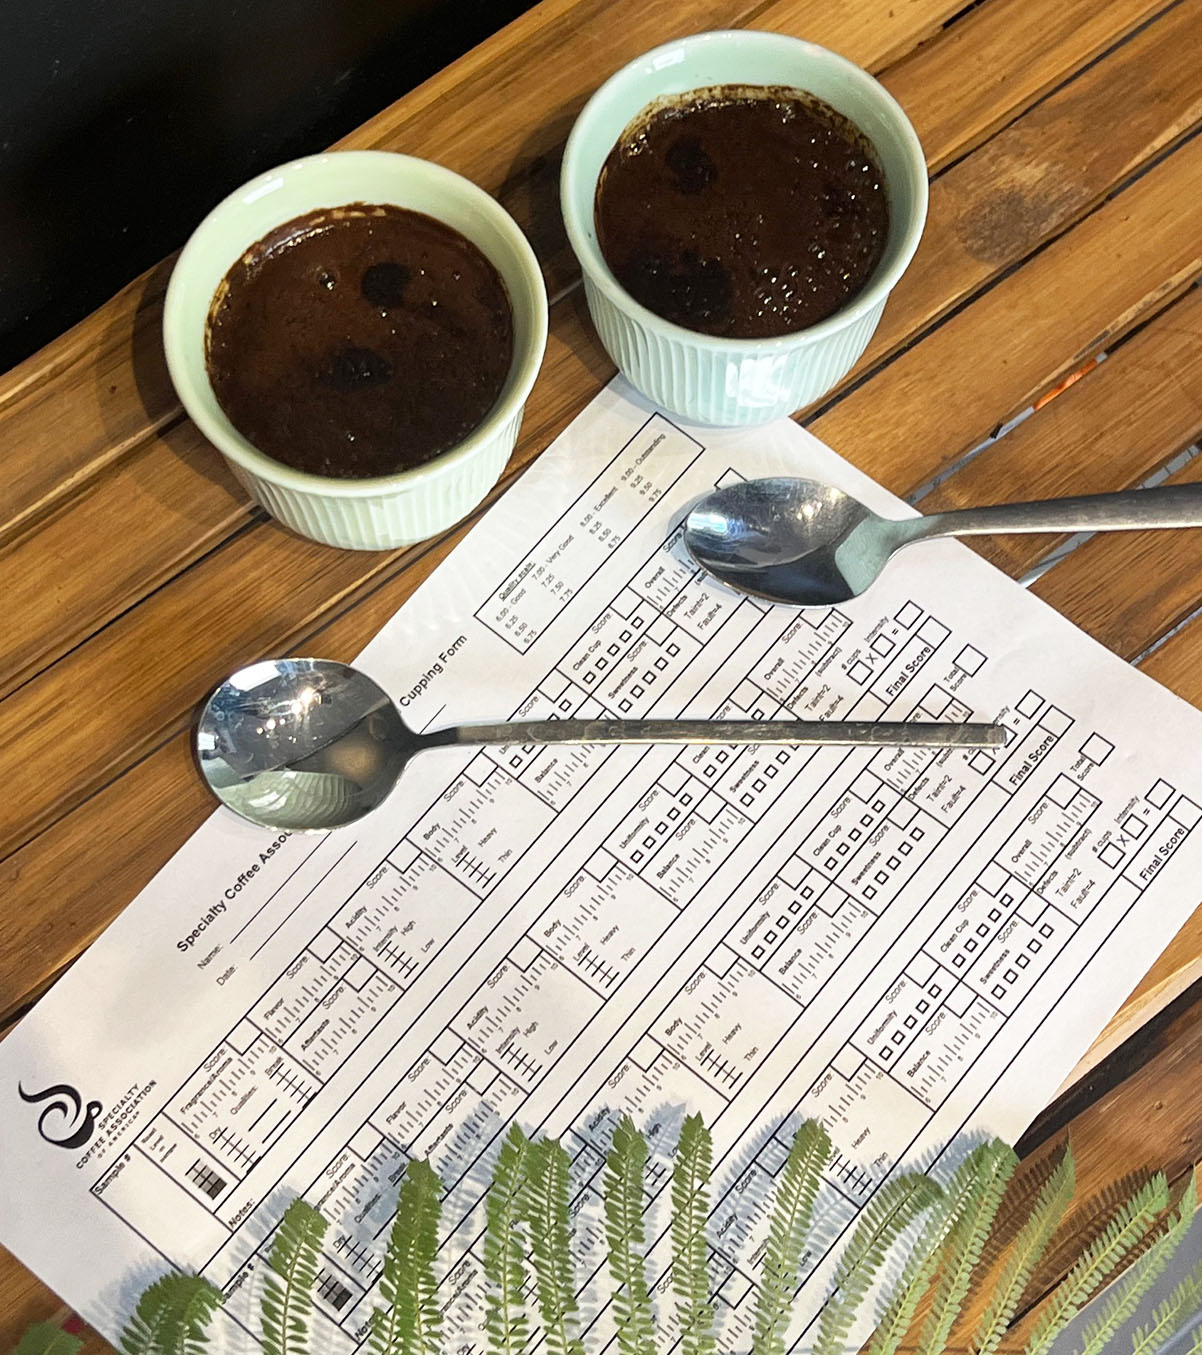 טעימת קפה, "קאפינג", כדי לבחור את דרגת הקלייה של הפולים. צילום: גאיה קרמינקר